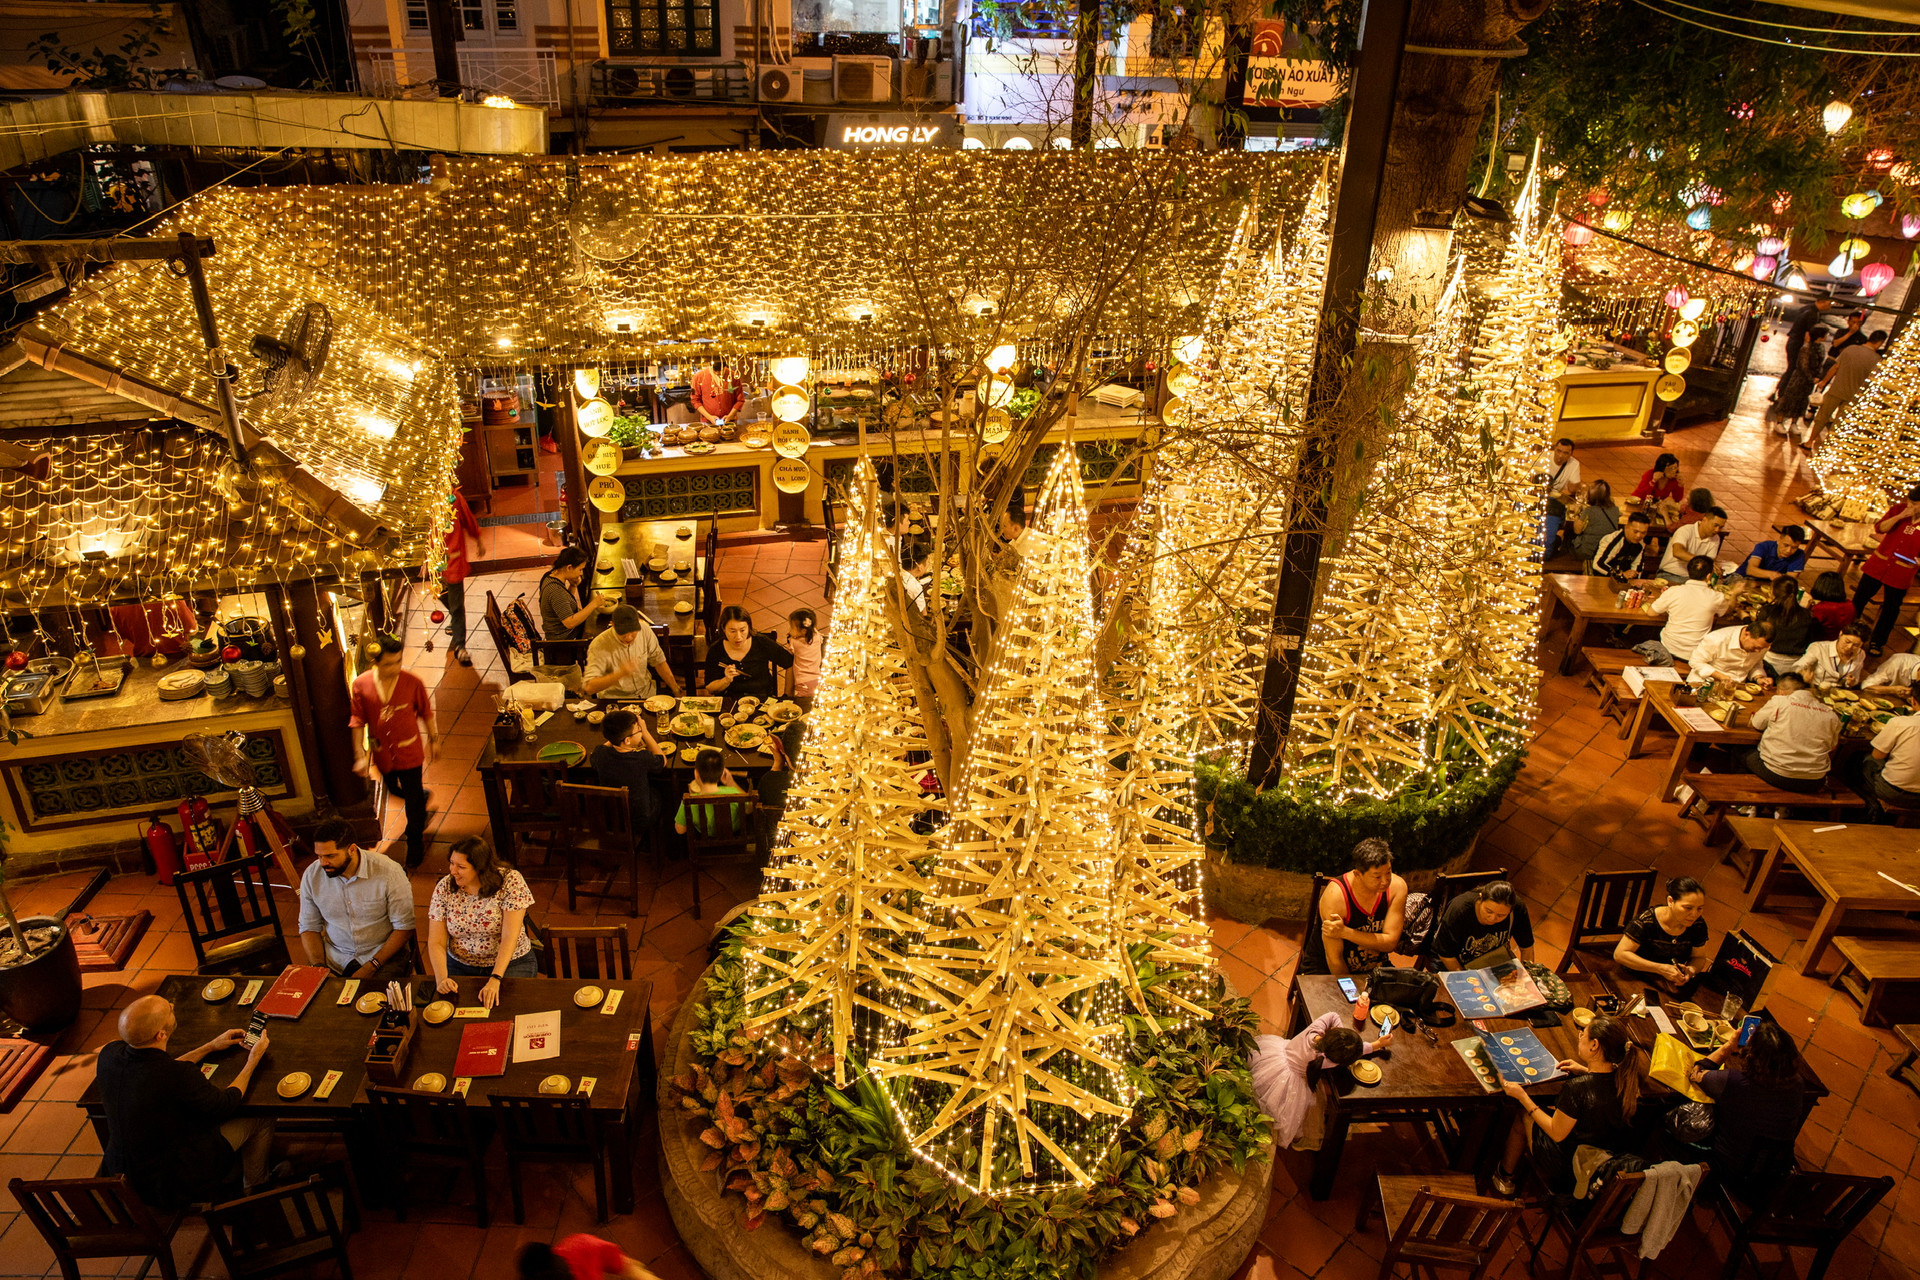 Nhiều du khách quốc tế tìm đến để thưởng thức ẩm thực và tận hưởng không gian lãng mạn đậm chất Việt. Ảnh: BTC